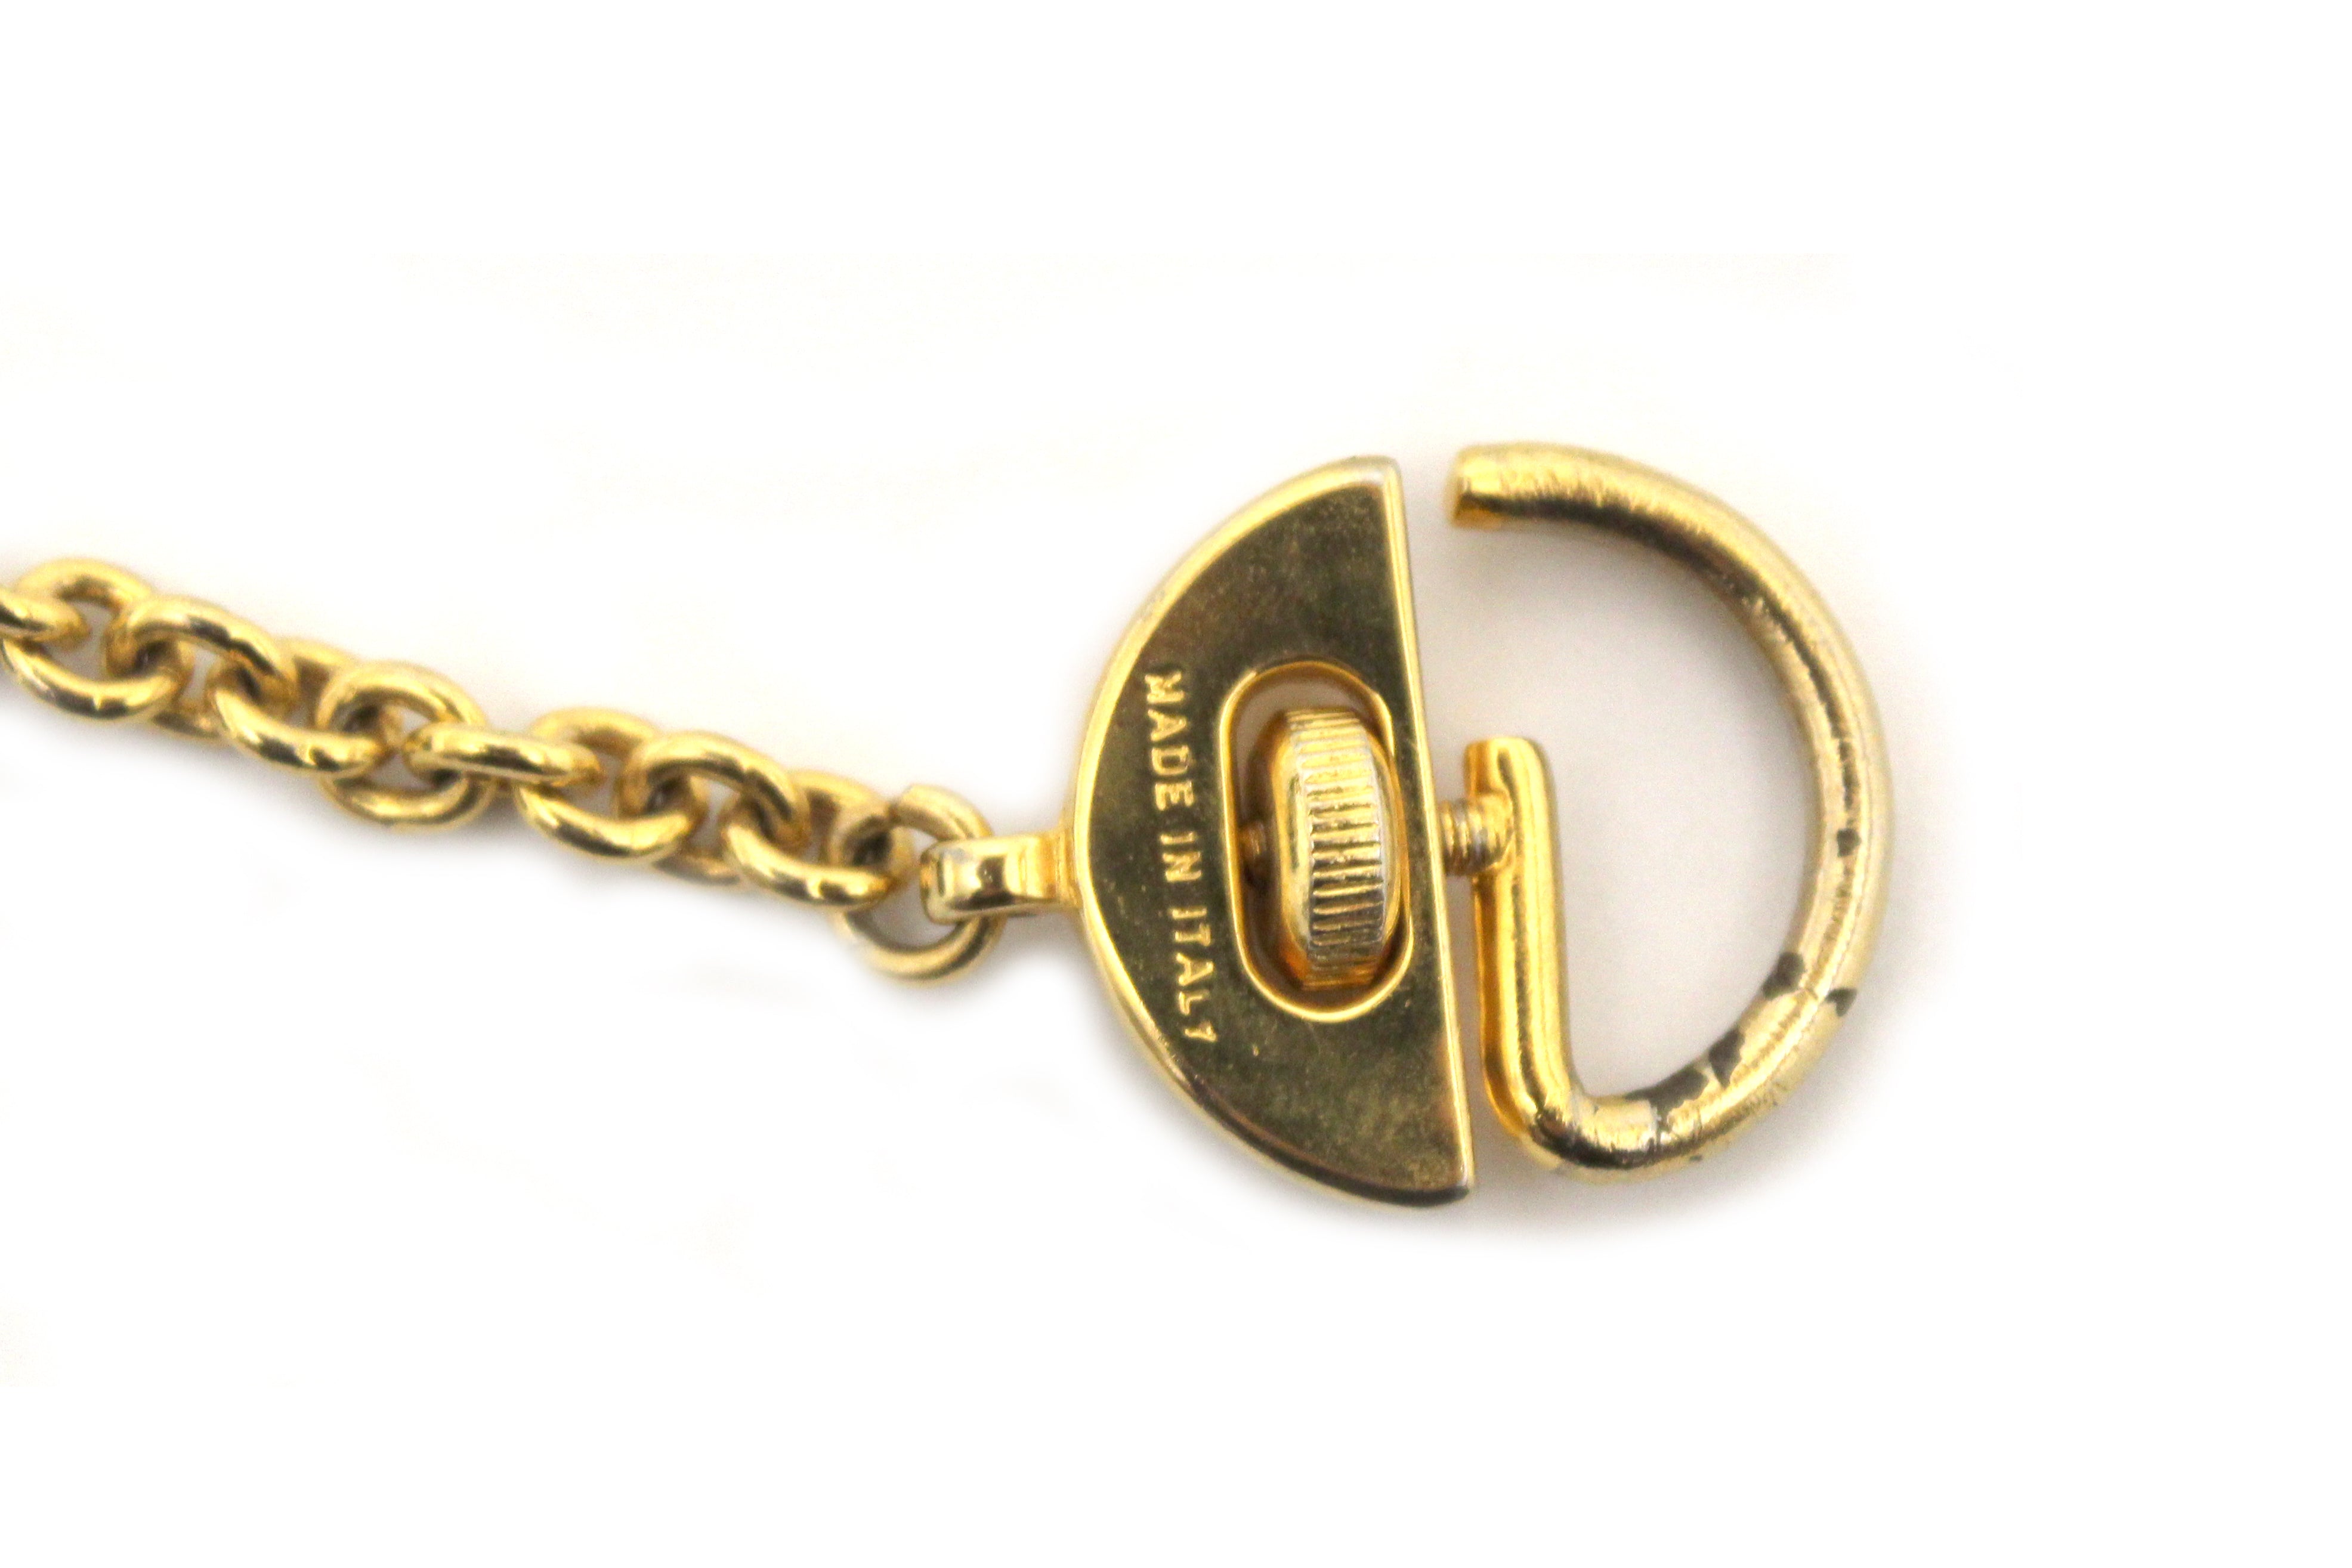 Authentic Salvatore Ferragamo Gancini Black Leather Miniature Bag Key Ring